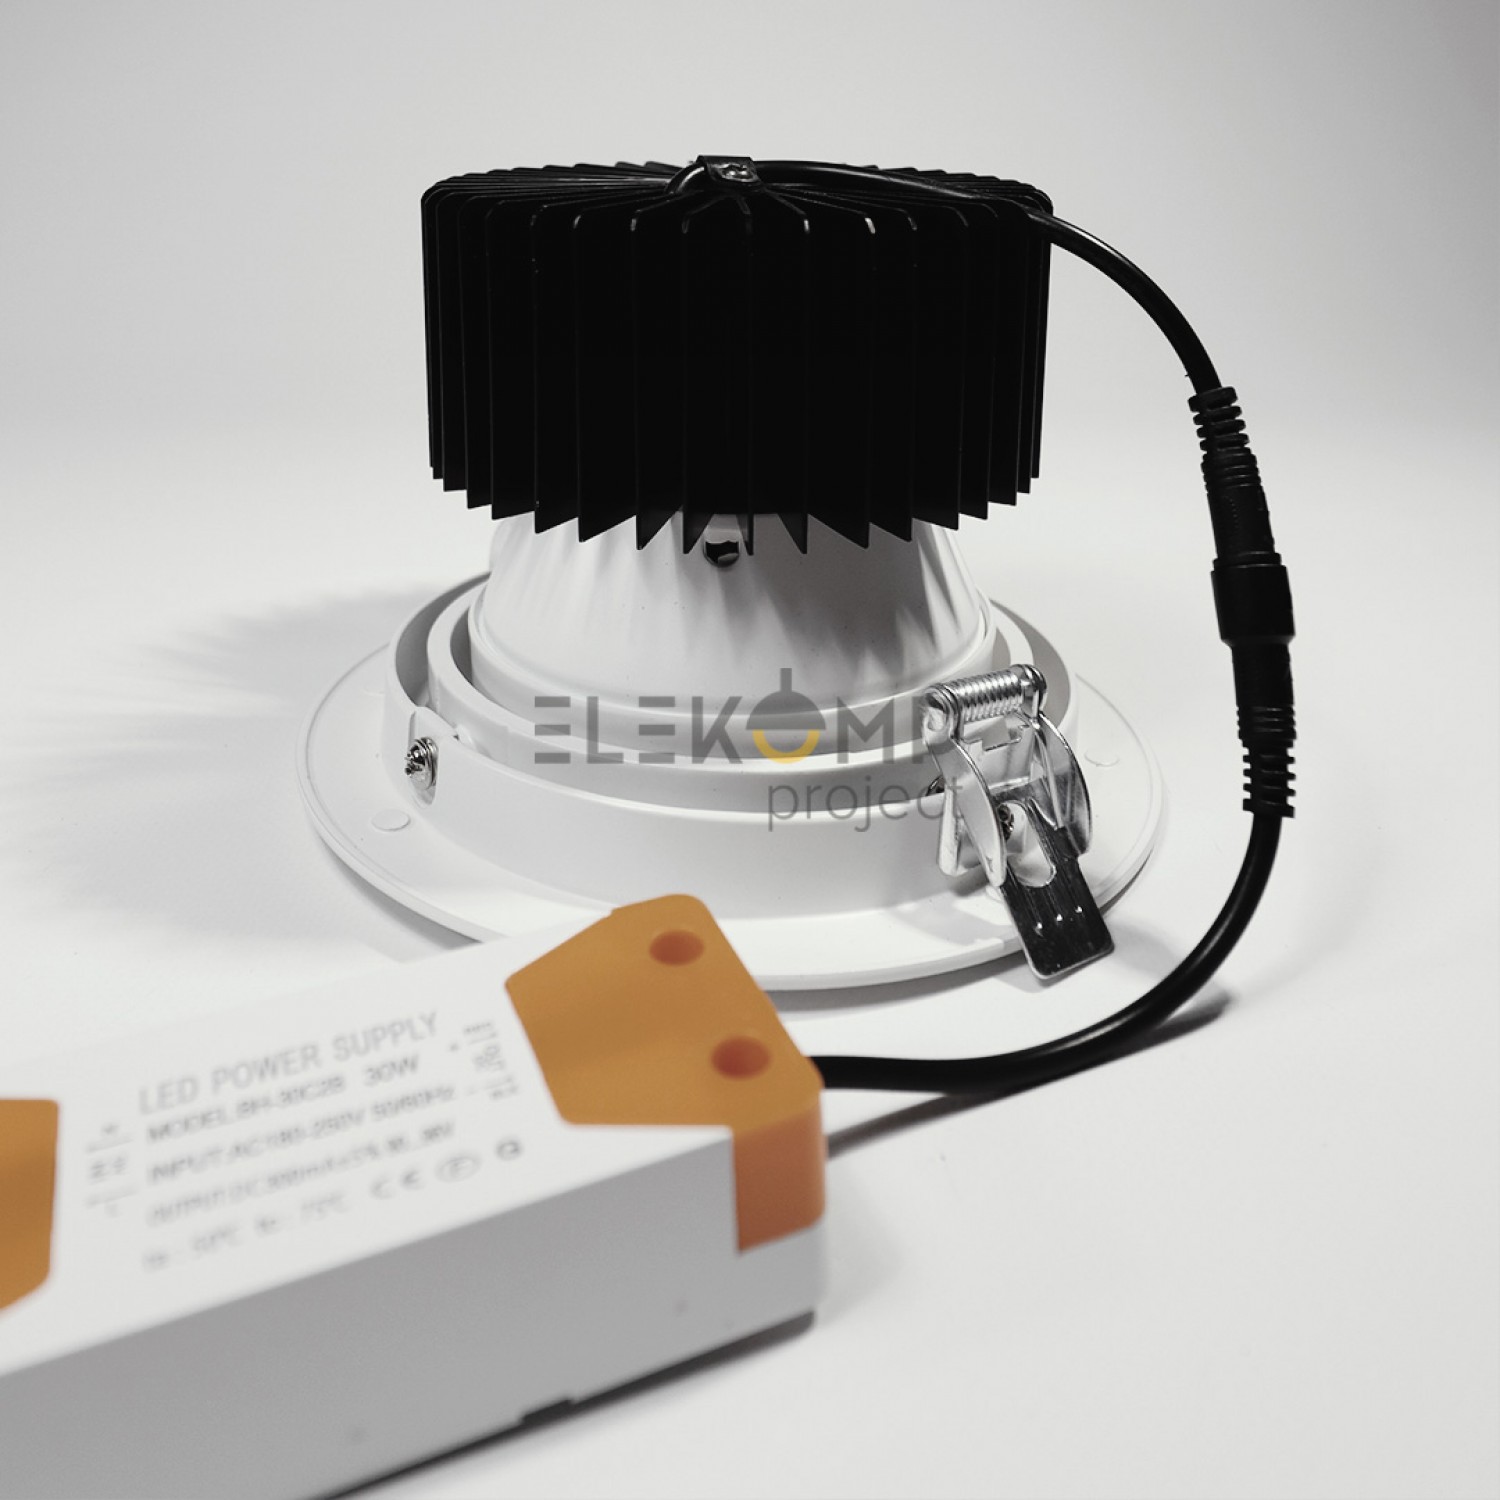 Точечный светильник Elekomp Pro Commercial Downlight Premium 30w R 139366